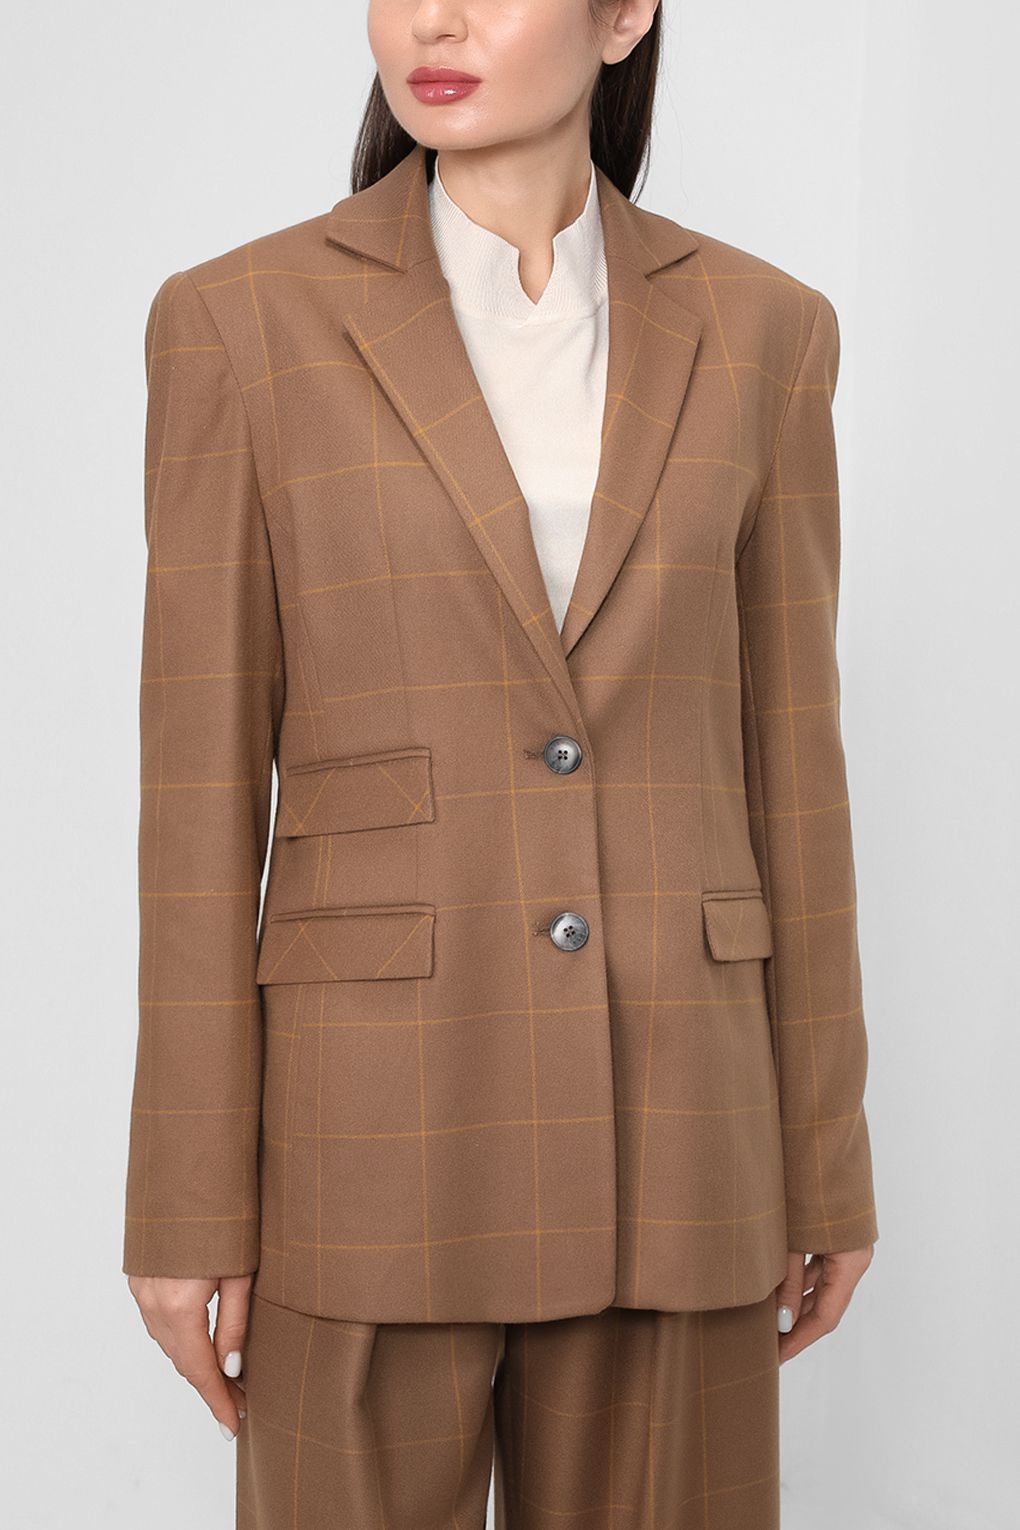 Пиджак женский CVA22131GC коричневый 42 Silvian Heach. Цвет: коричневый